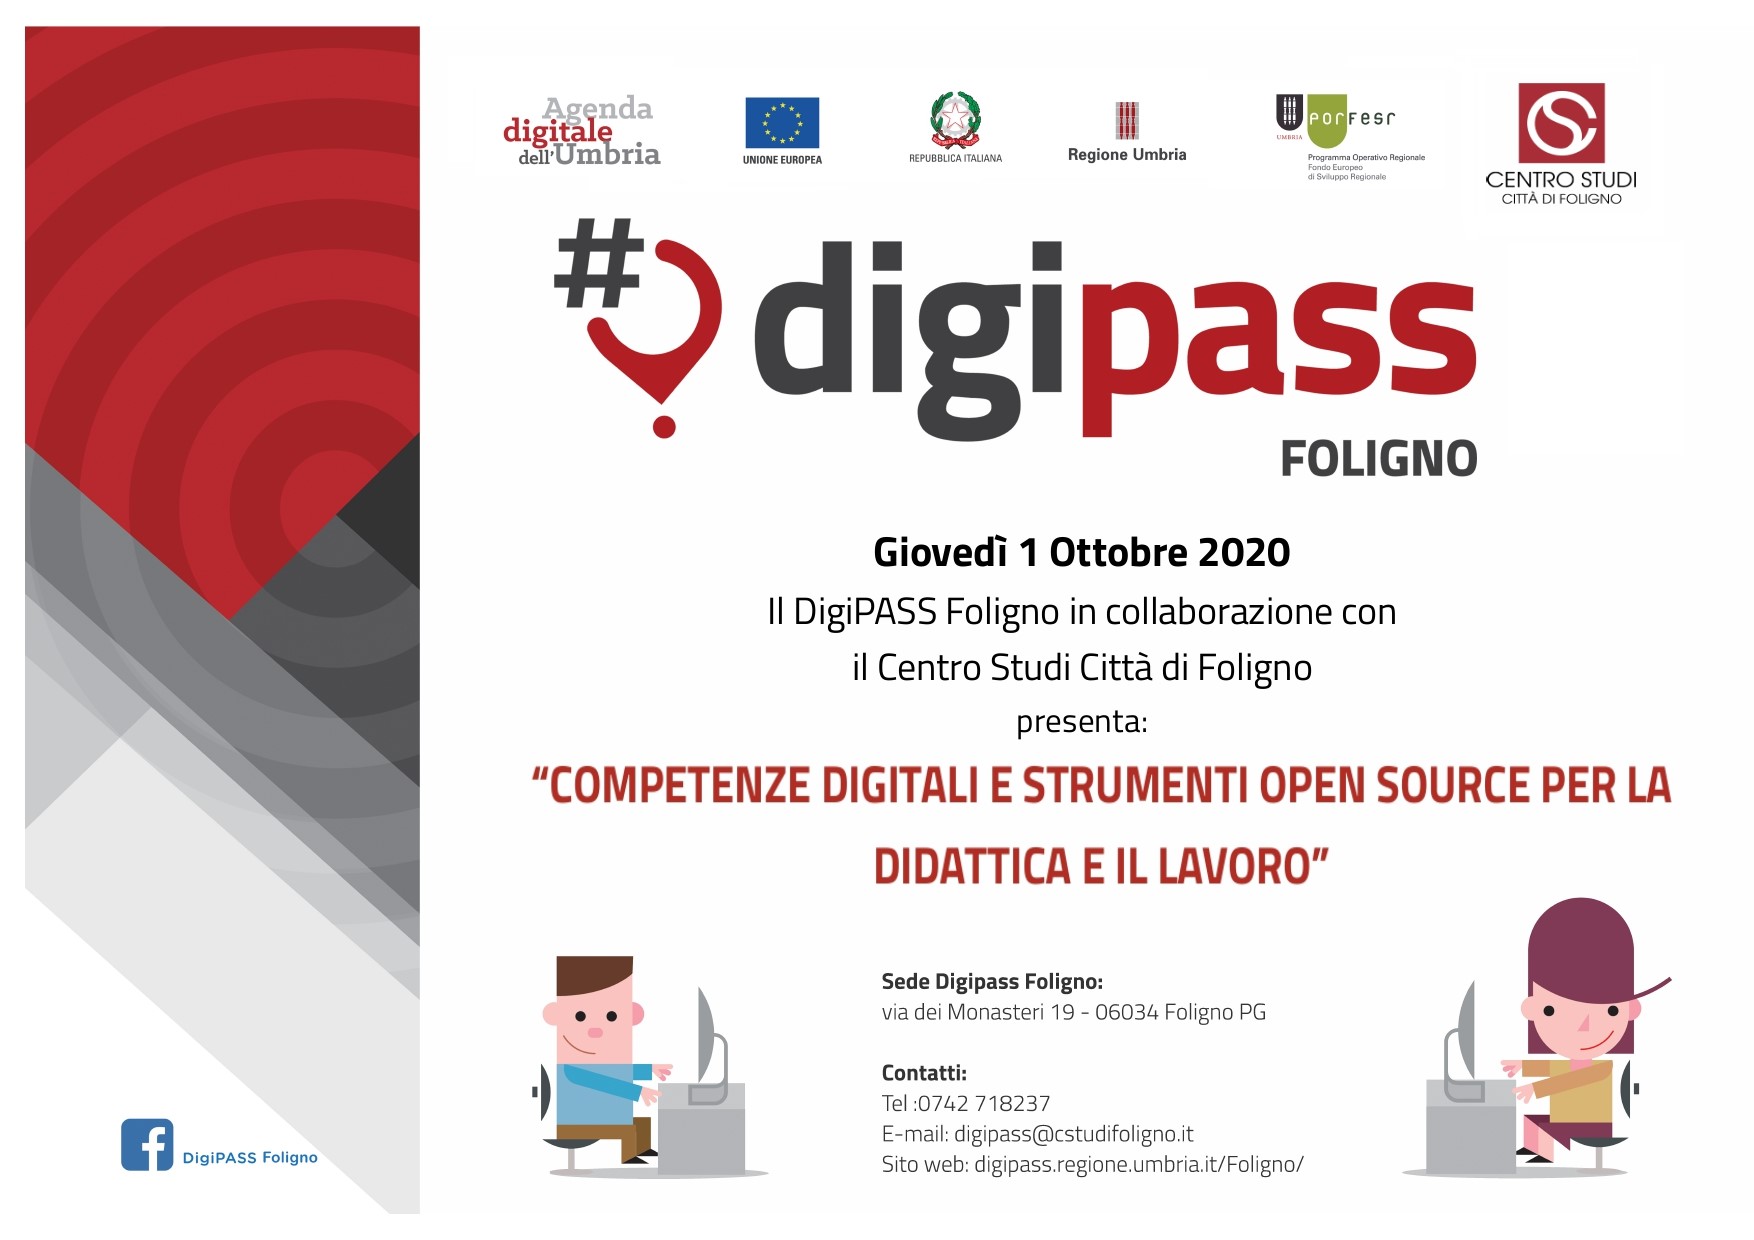 DigiPASS Foligno: Competenze digitali e strumenti open source per la didattica e il lavoro